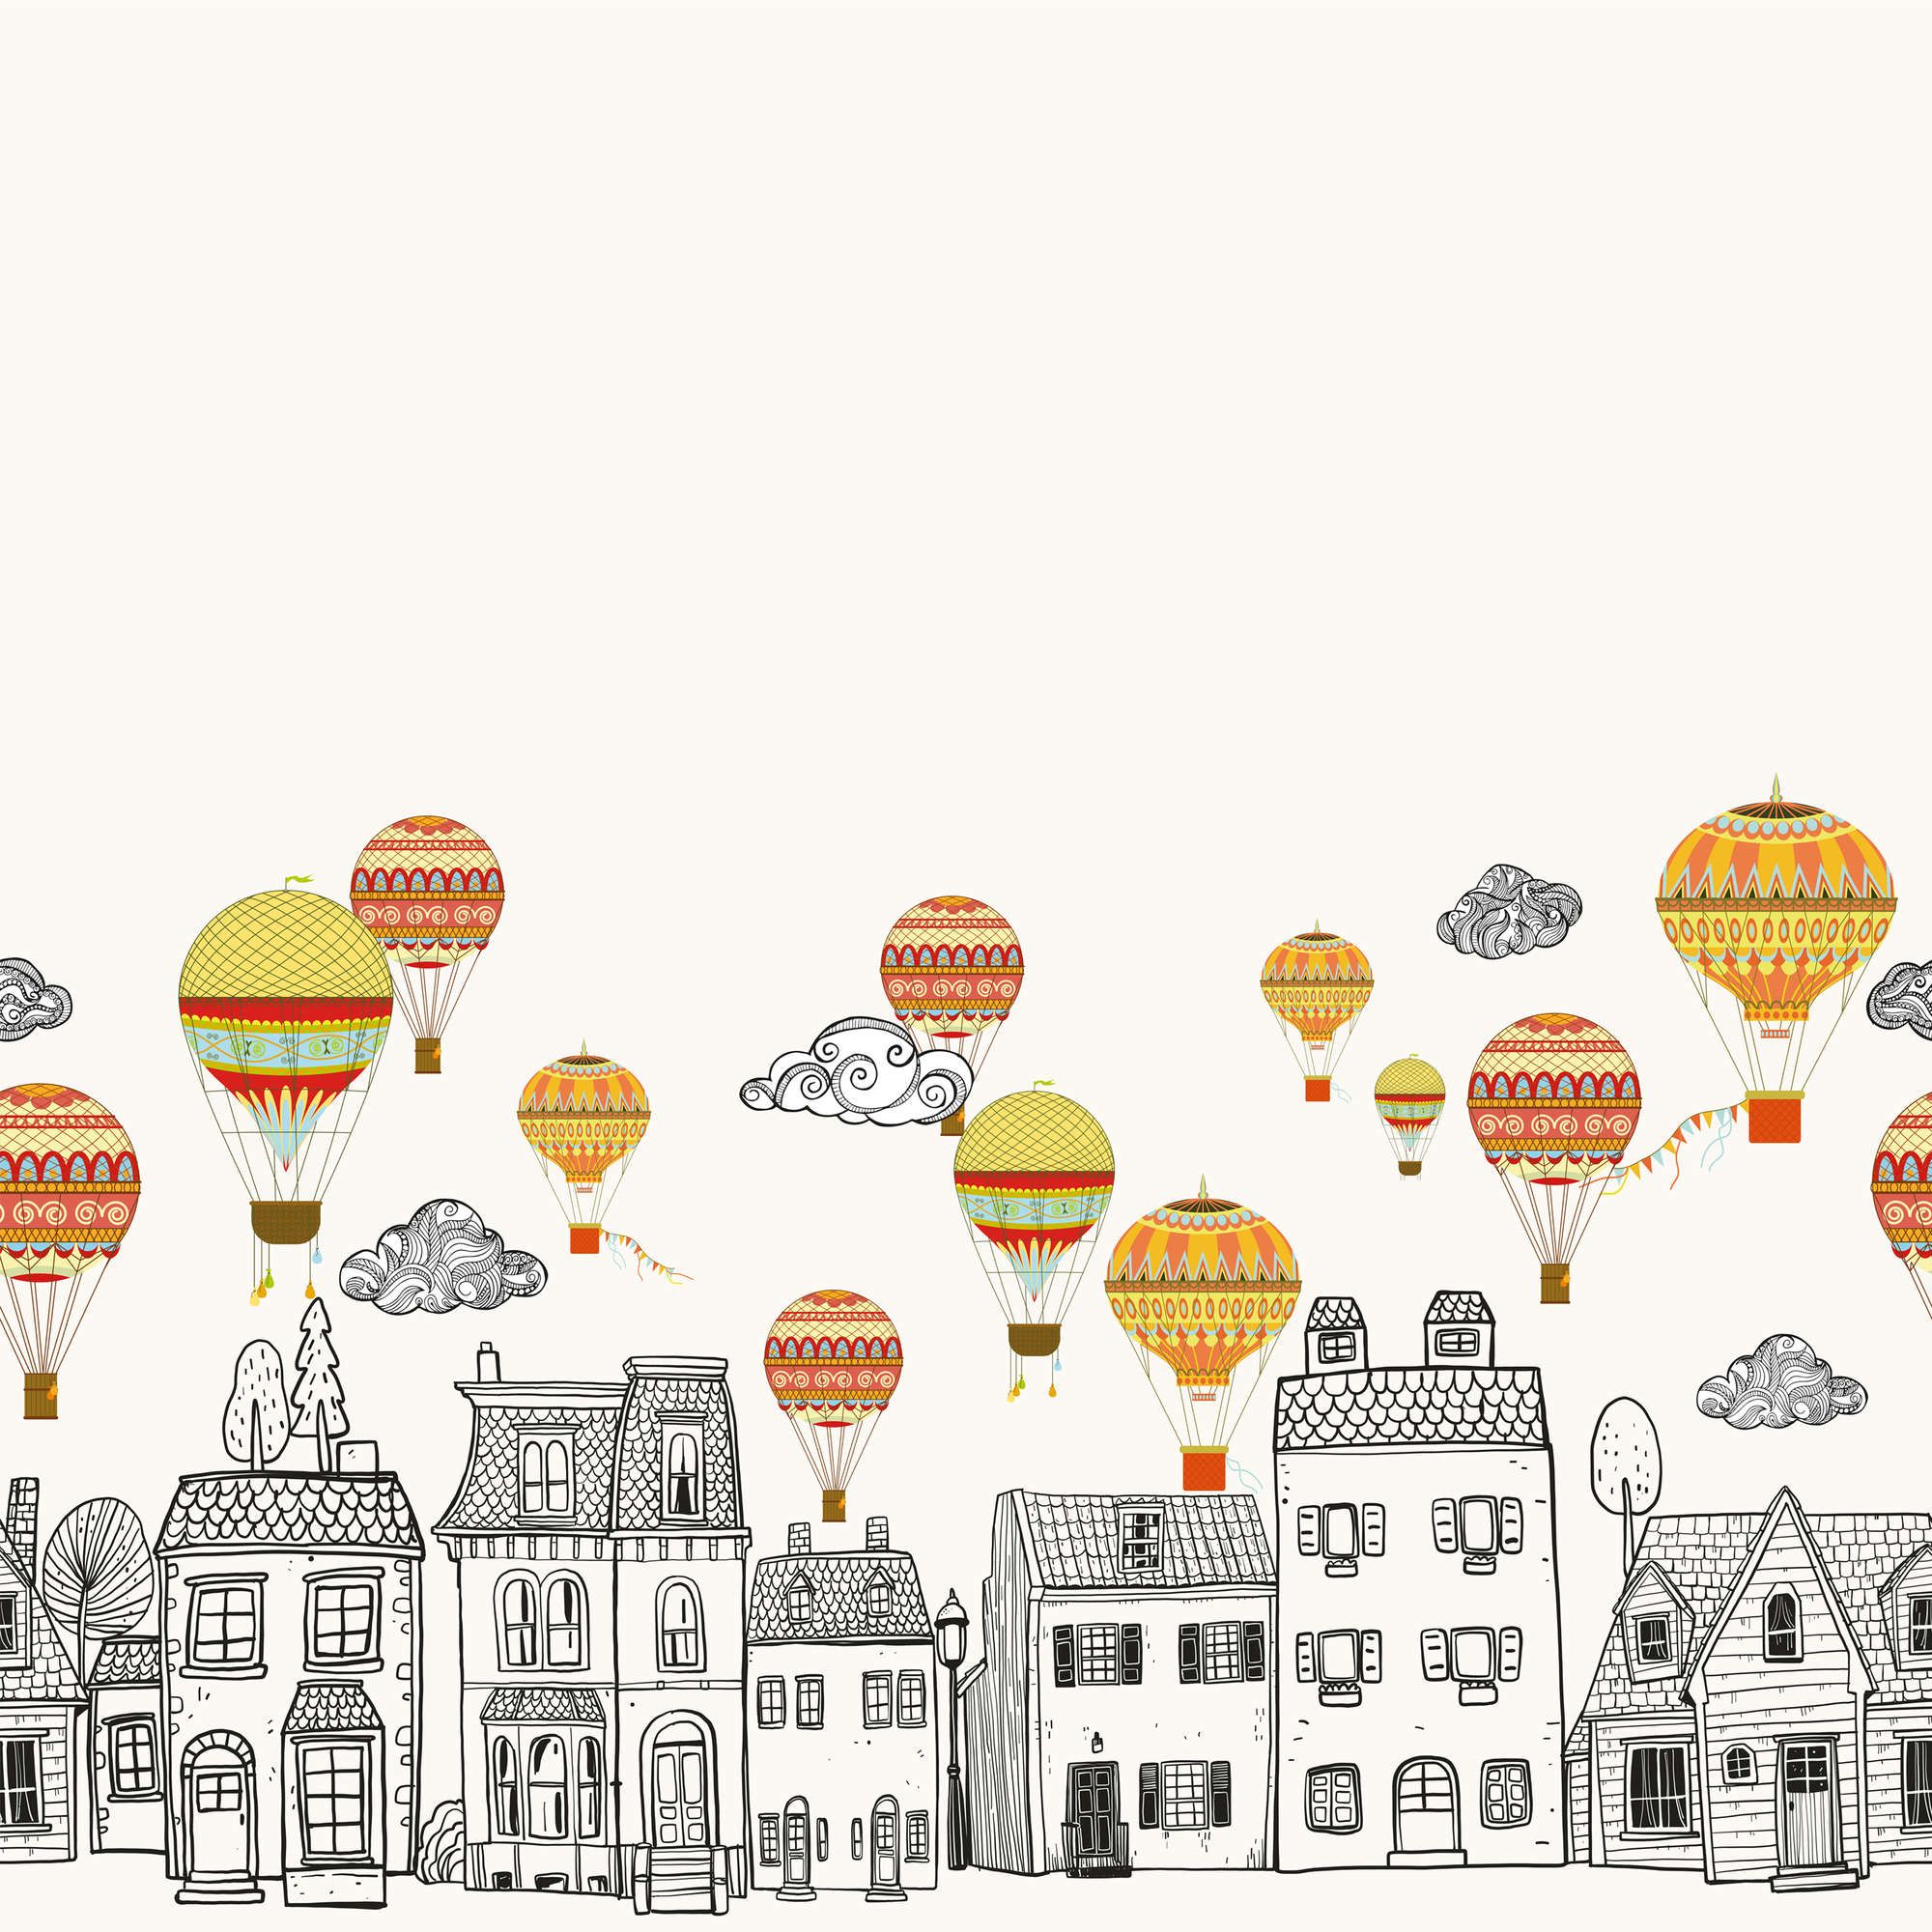             papiers peints à impression numérique Petite ville avec montgolfières - intissé lisse et nacré
        